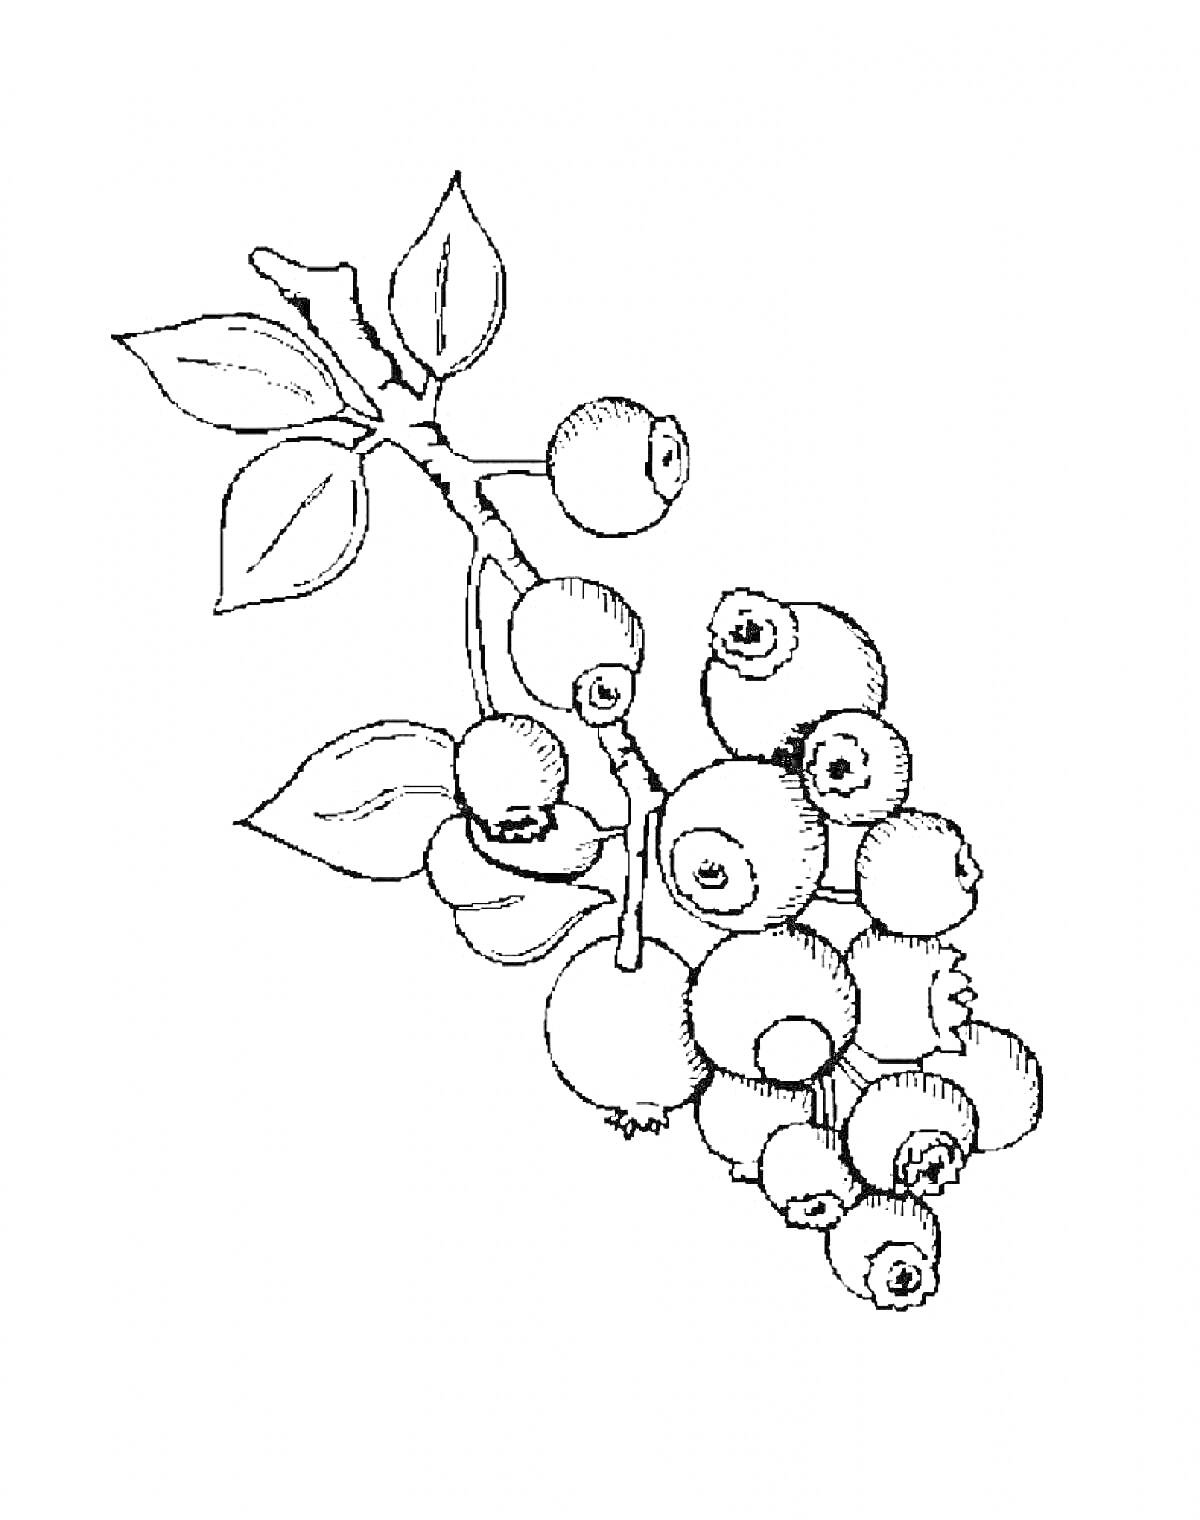 Веточка с ягодами черники и листьями